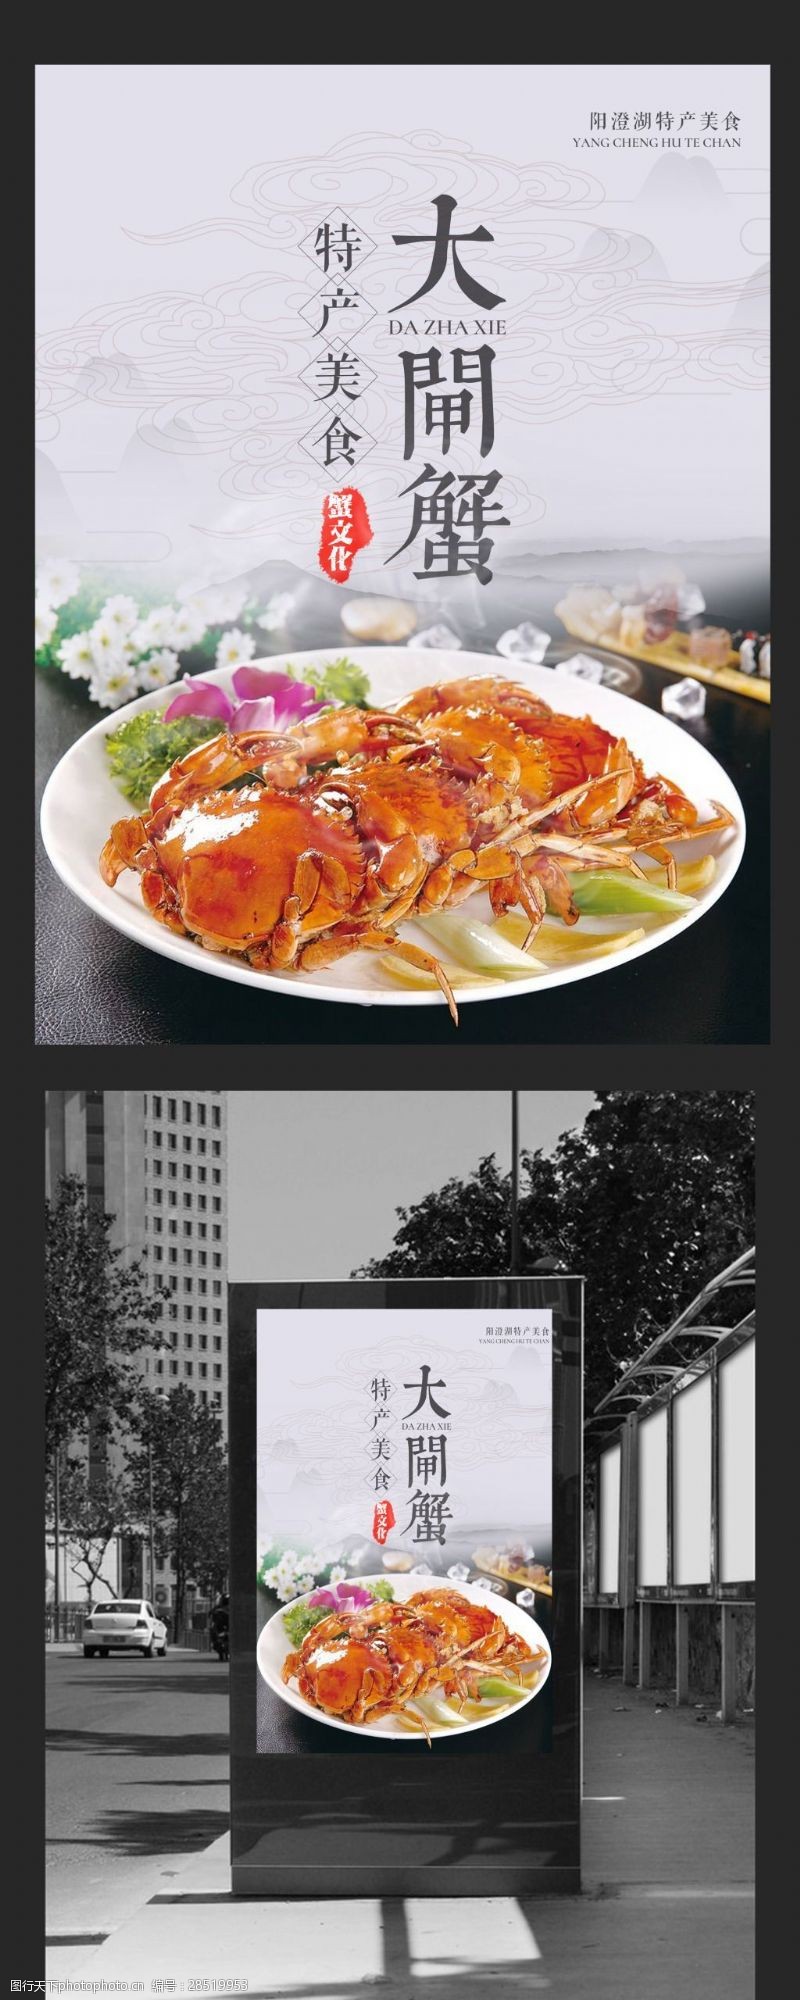 大闸蟹包装盒特产美食大闸蟹宣传海报设计